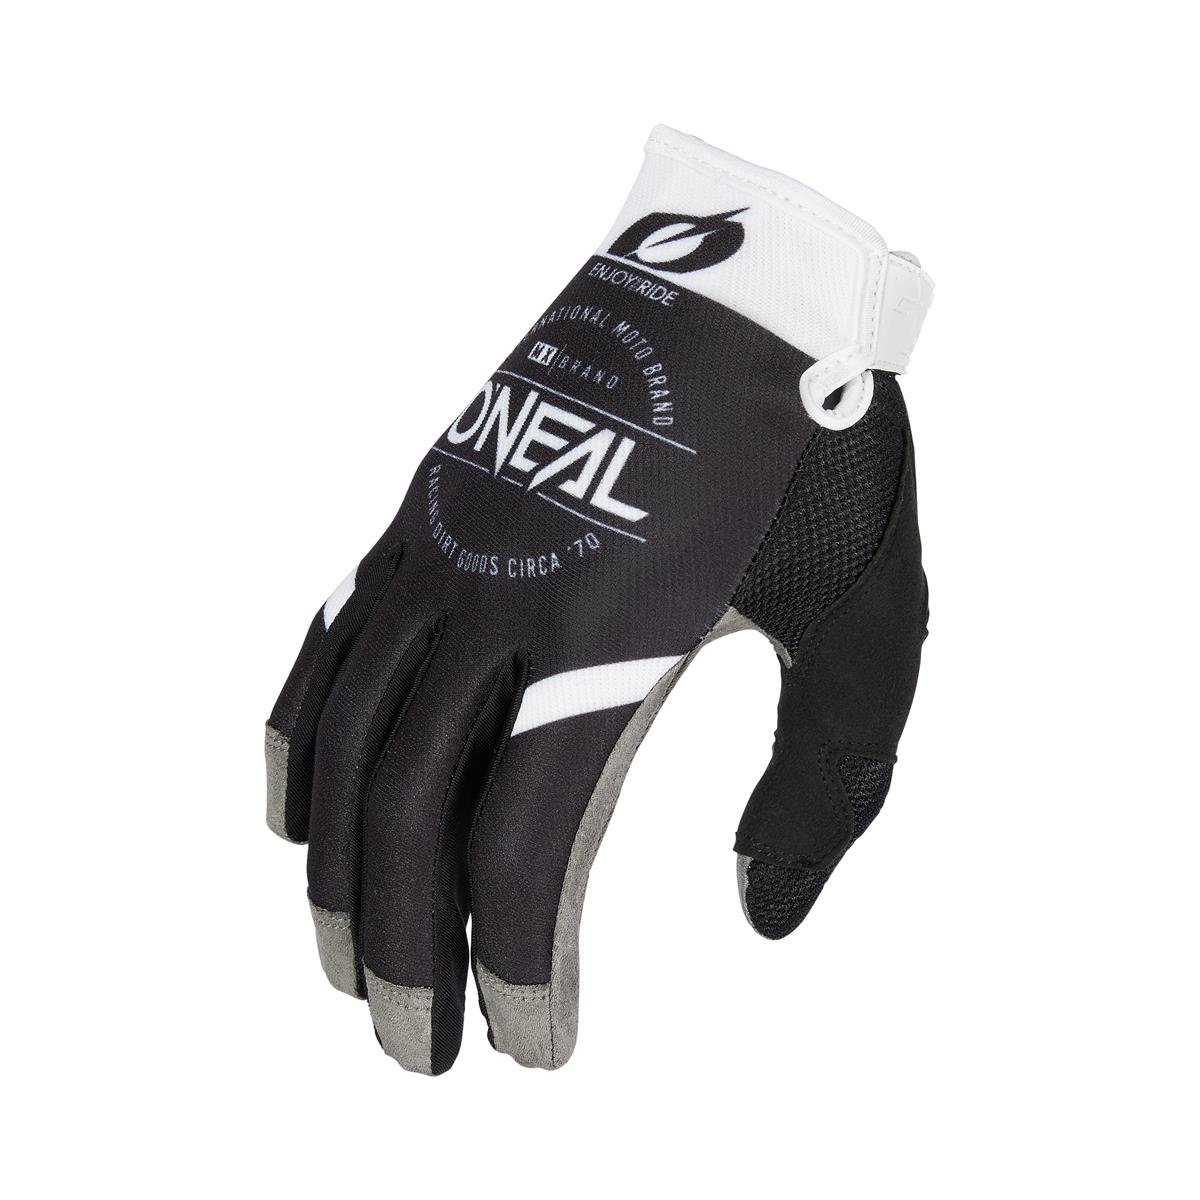 O'Neal Gloves Mayhem Brand - Black/White